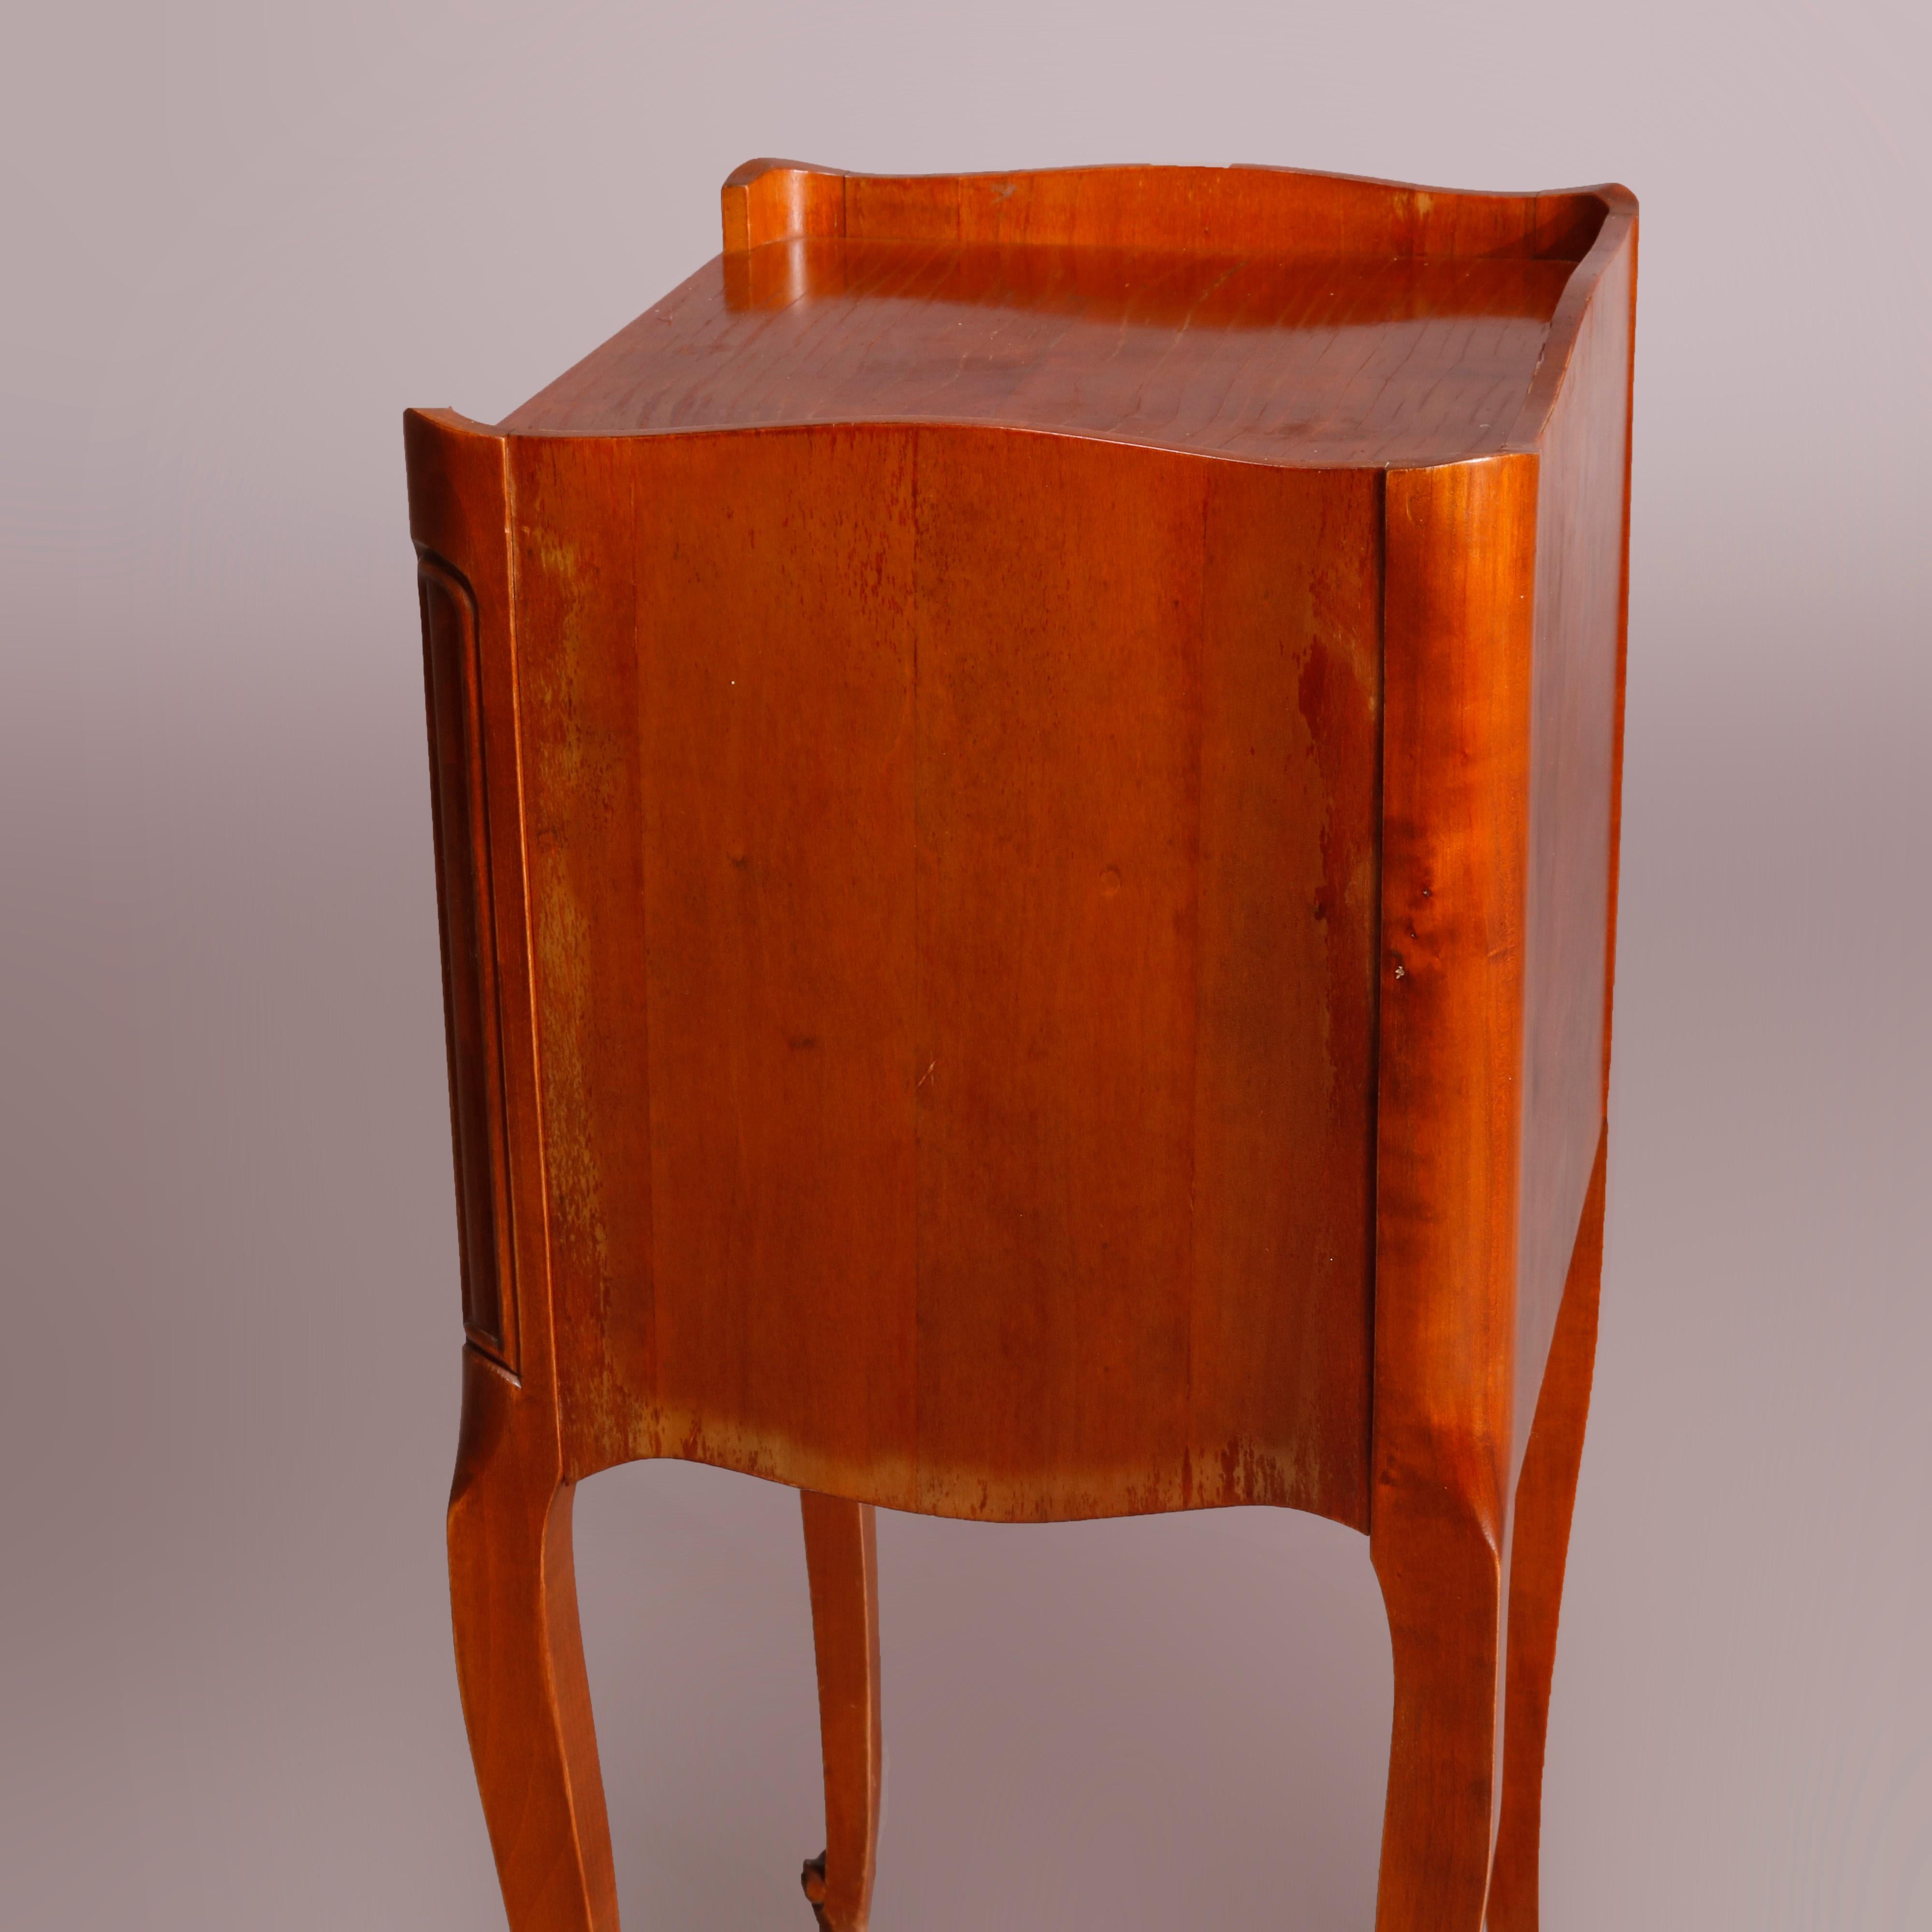 Französischer Beistelltisch im Louis-XVI-Stil aus Nussbaumholz mit geschlossener Platte über einem Gehäuse mit drei Schubladen und geformter Schürze, auf Cabriole-Beinen mit Schnörkelfüßen, 20

Maße: 27